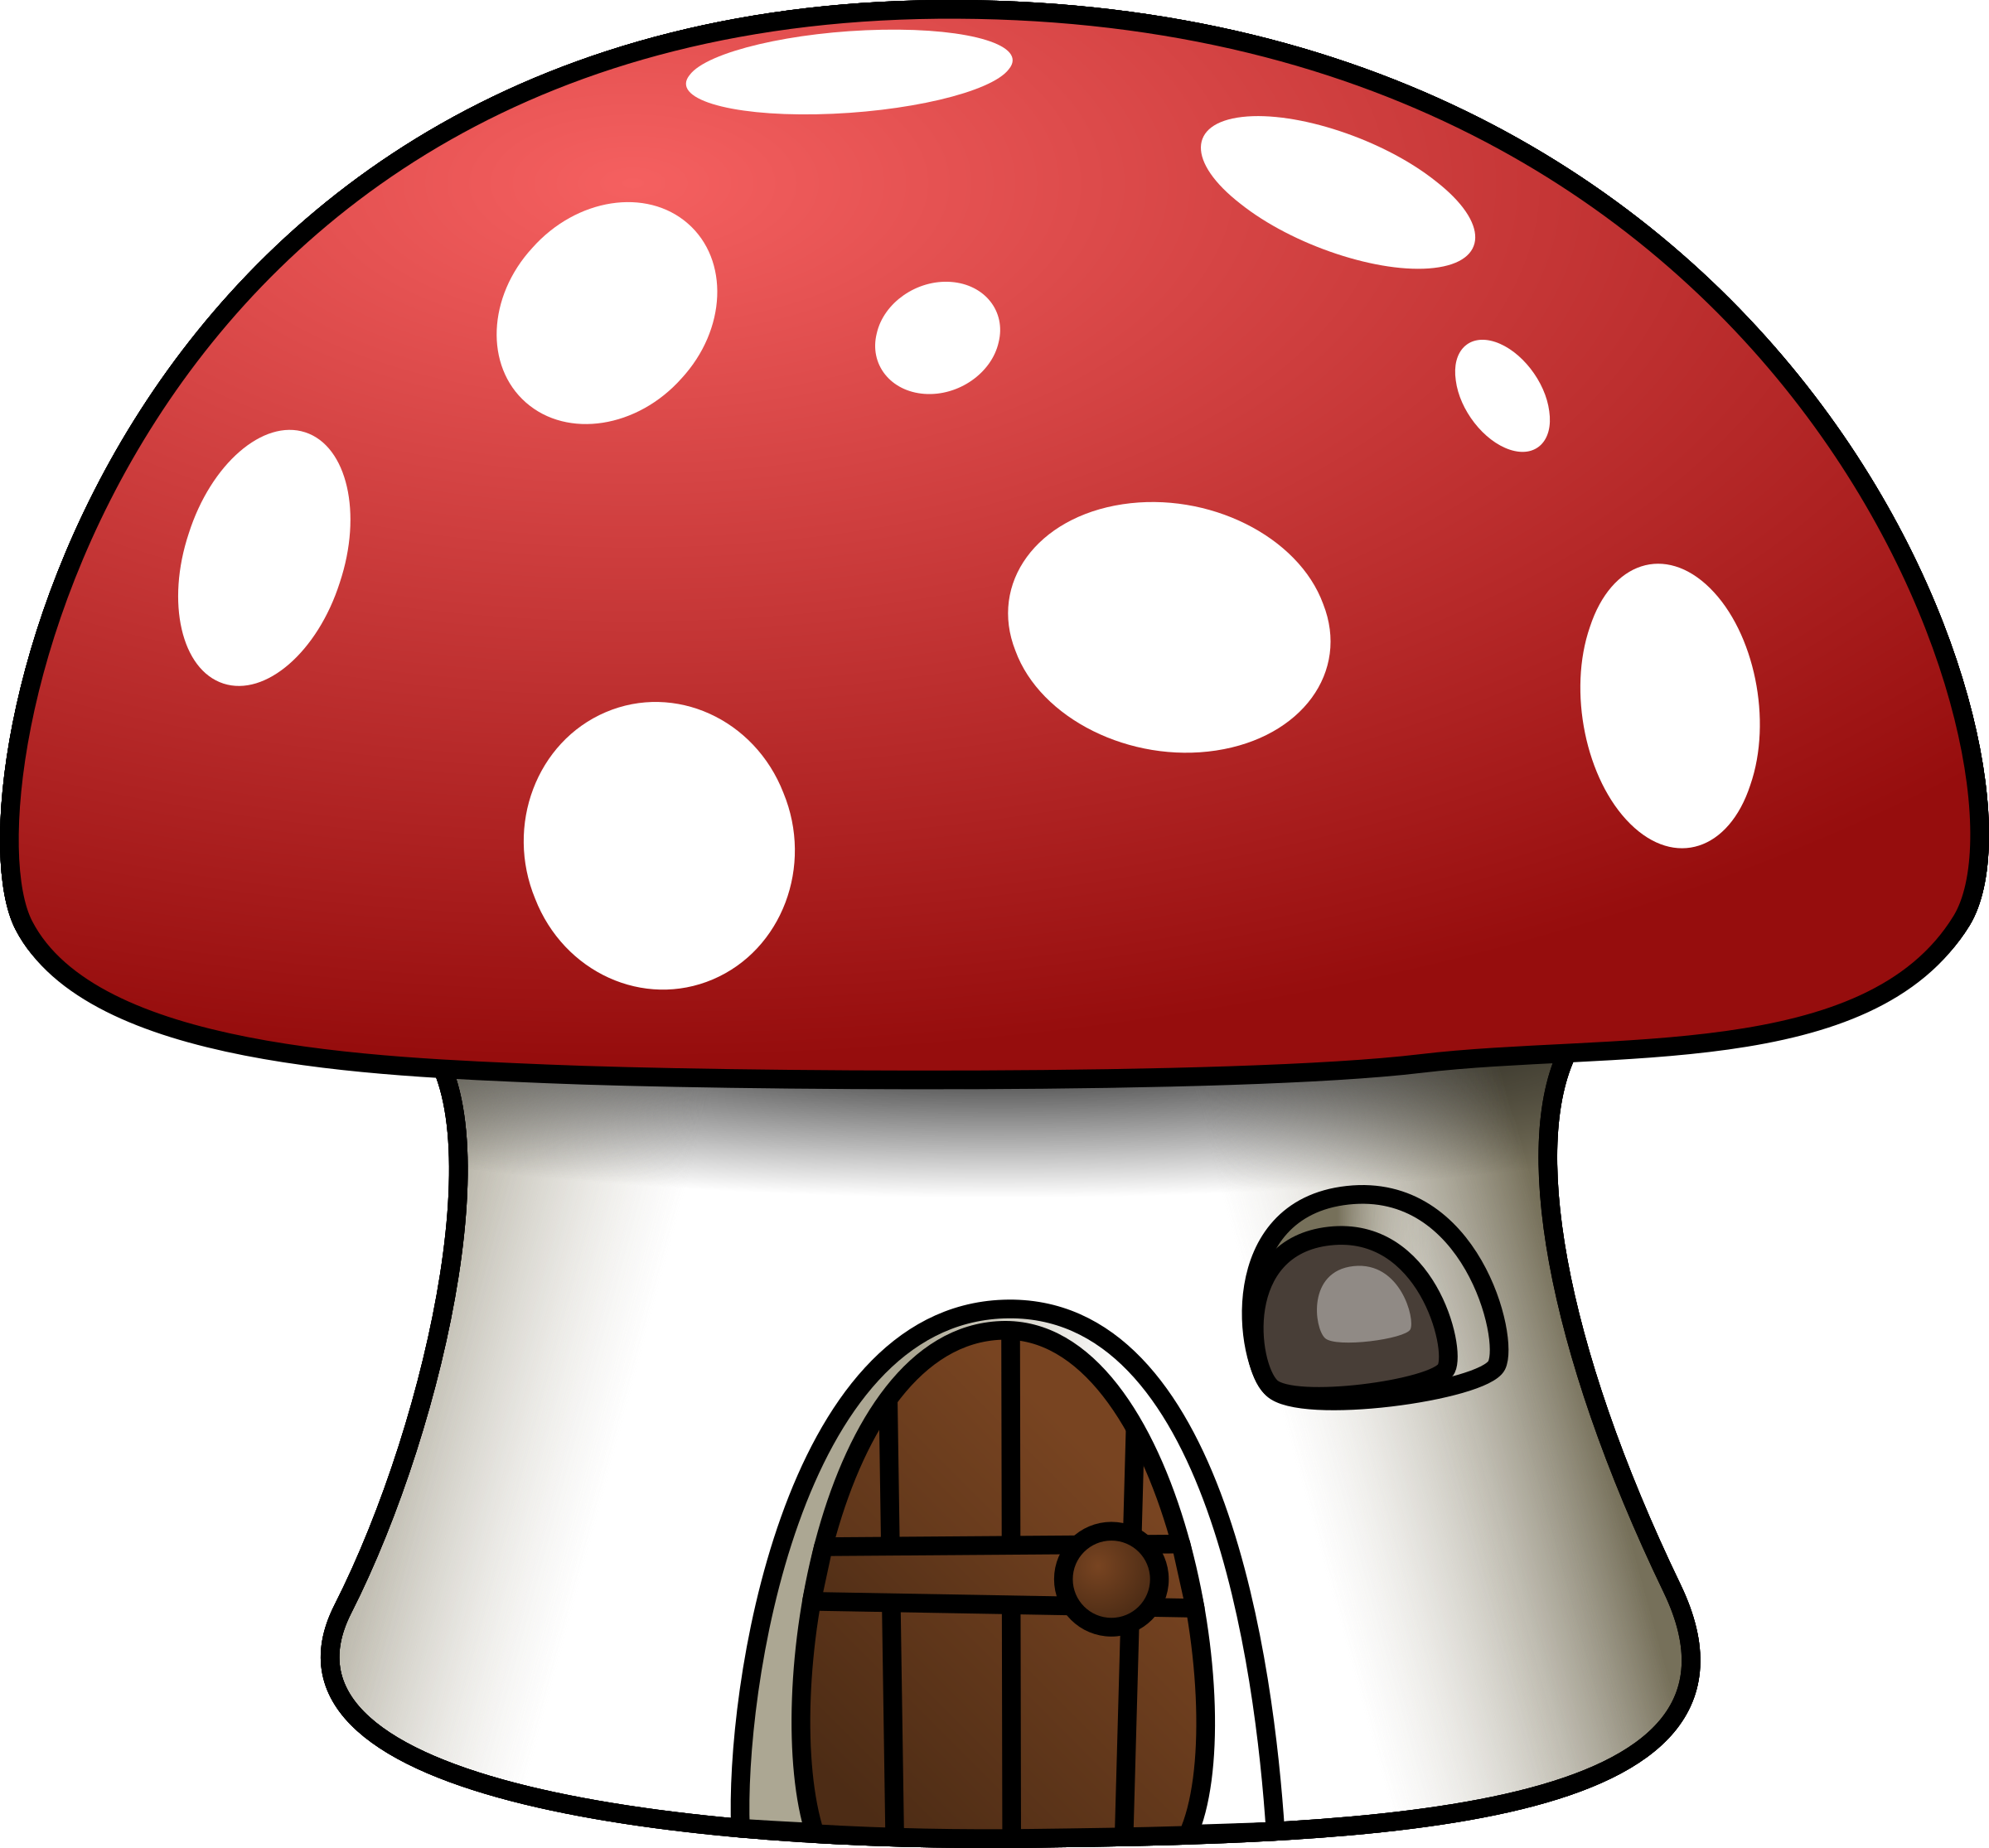 toadstool mushroom clipart - photo #10